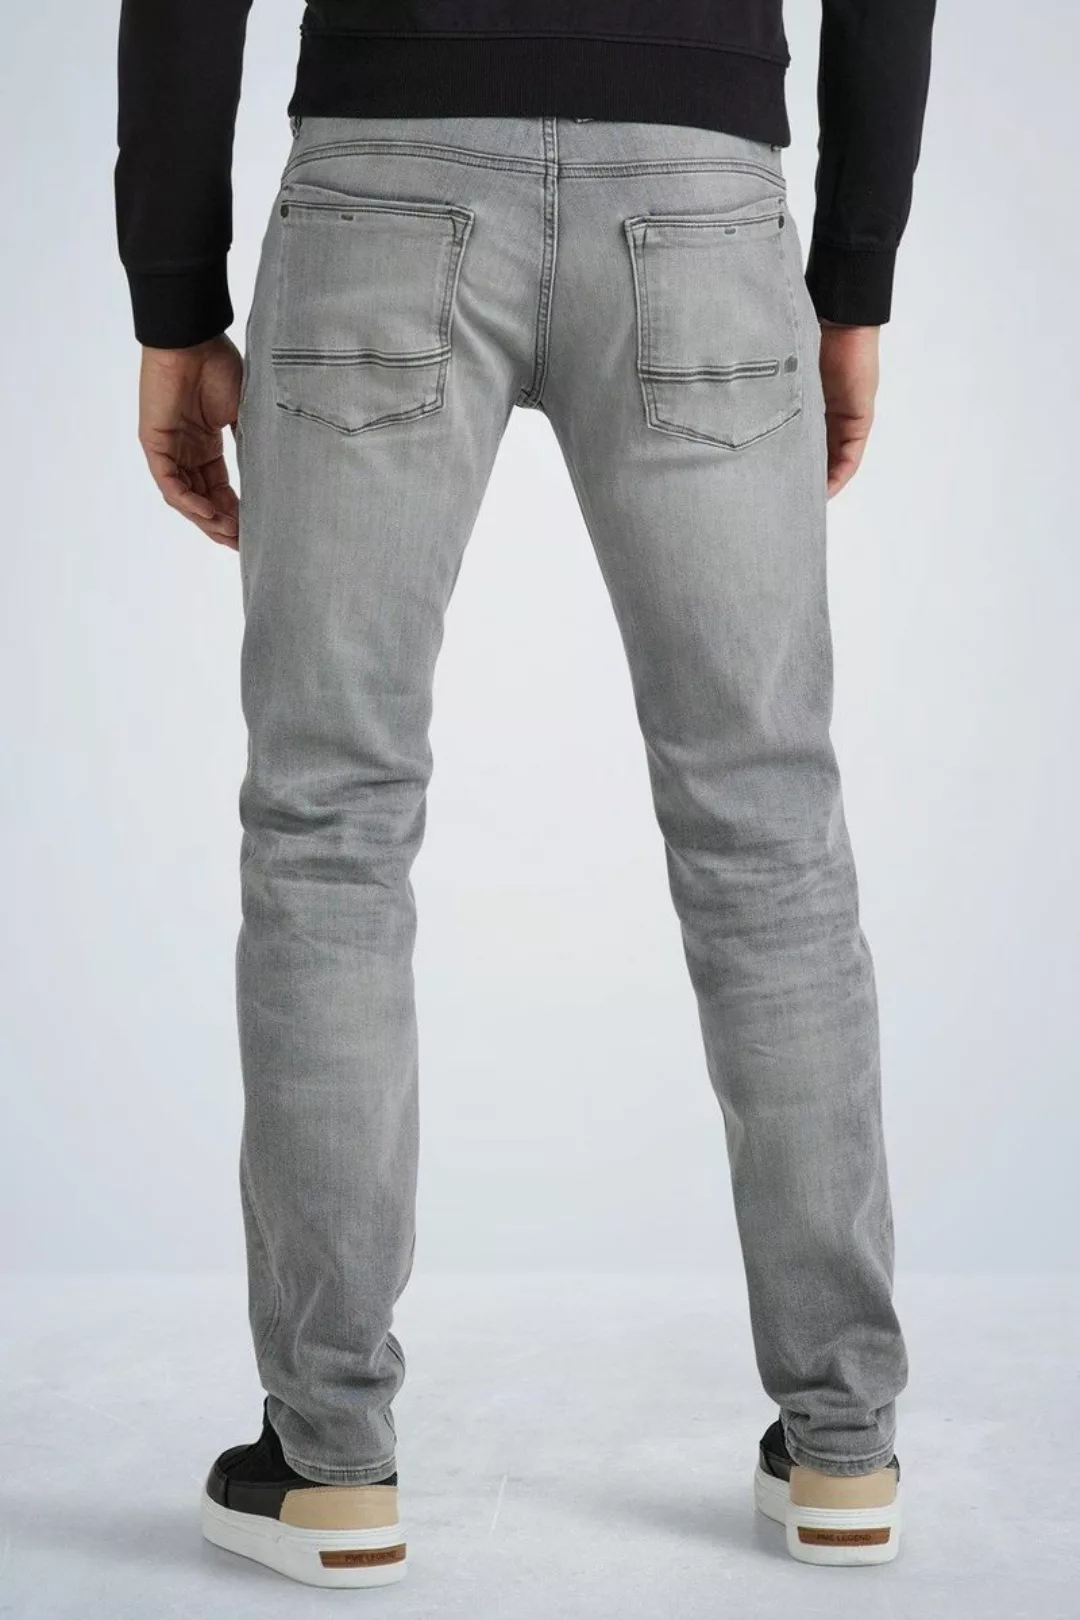 PME Legend Commander 3.0 Jeans Grau - Größe W 29 - L 32 günstig online kaufen